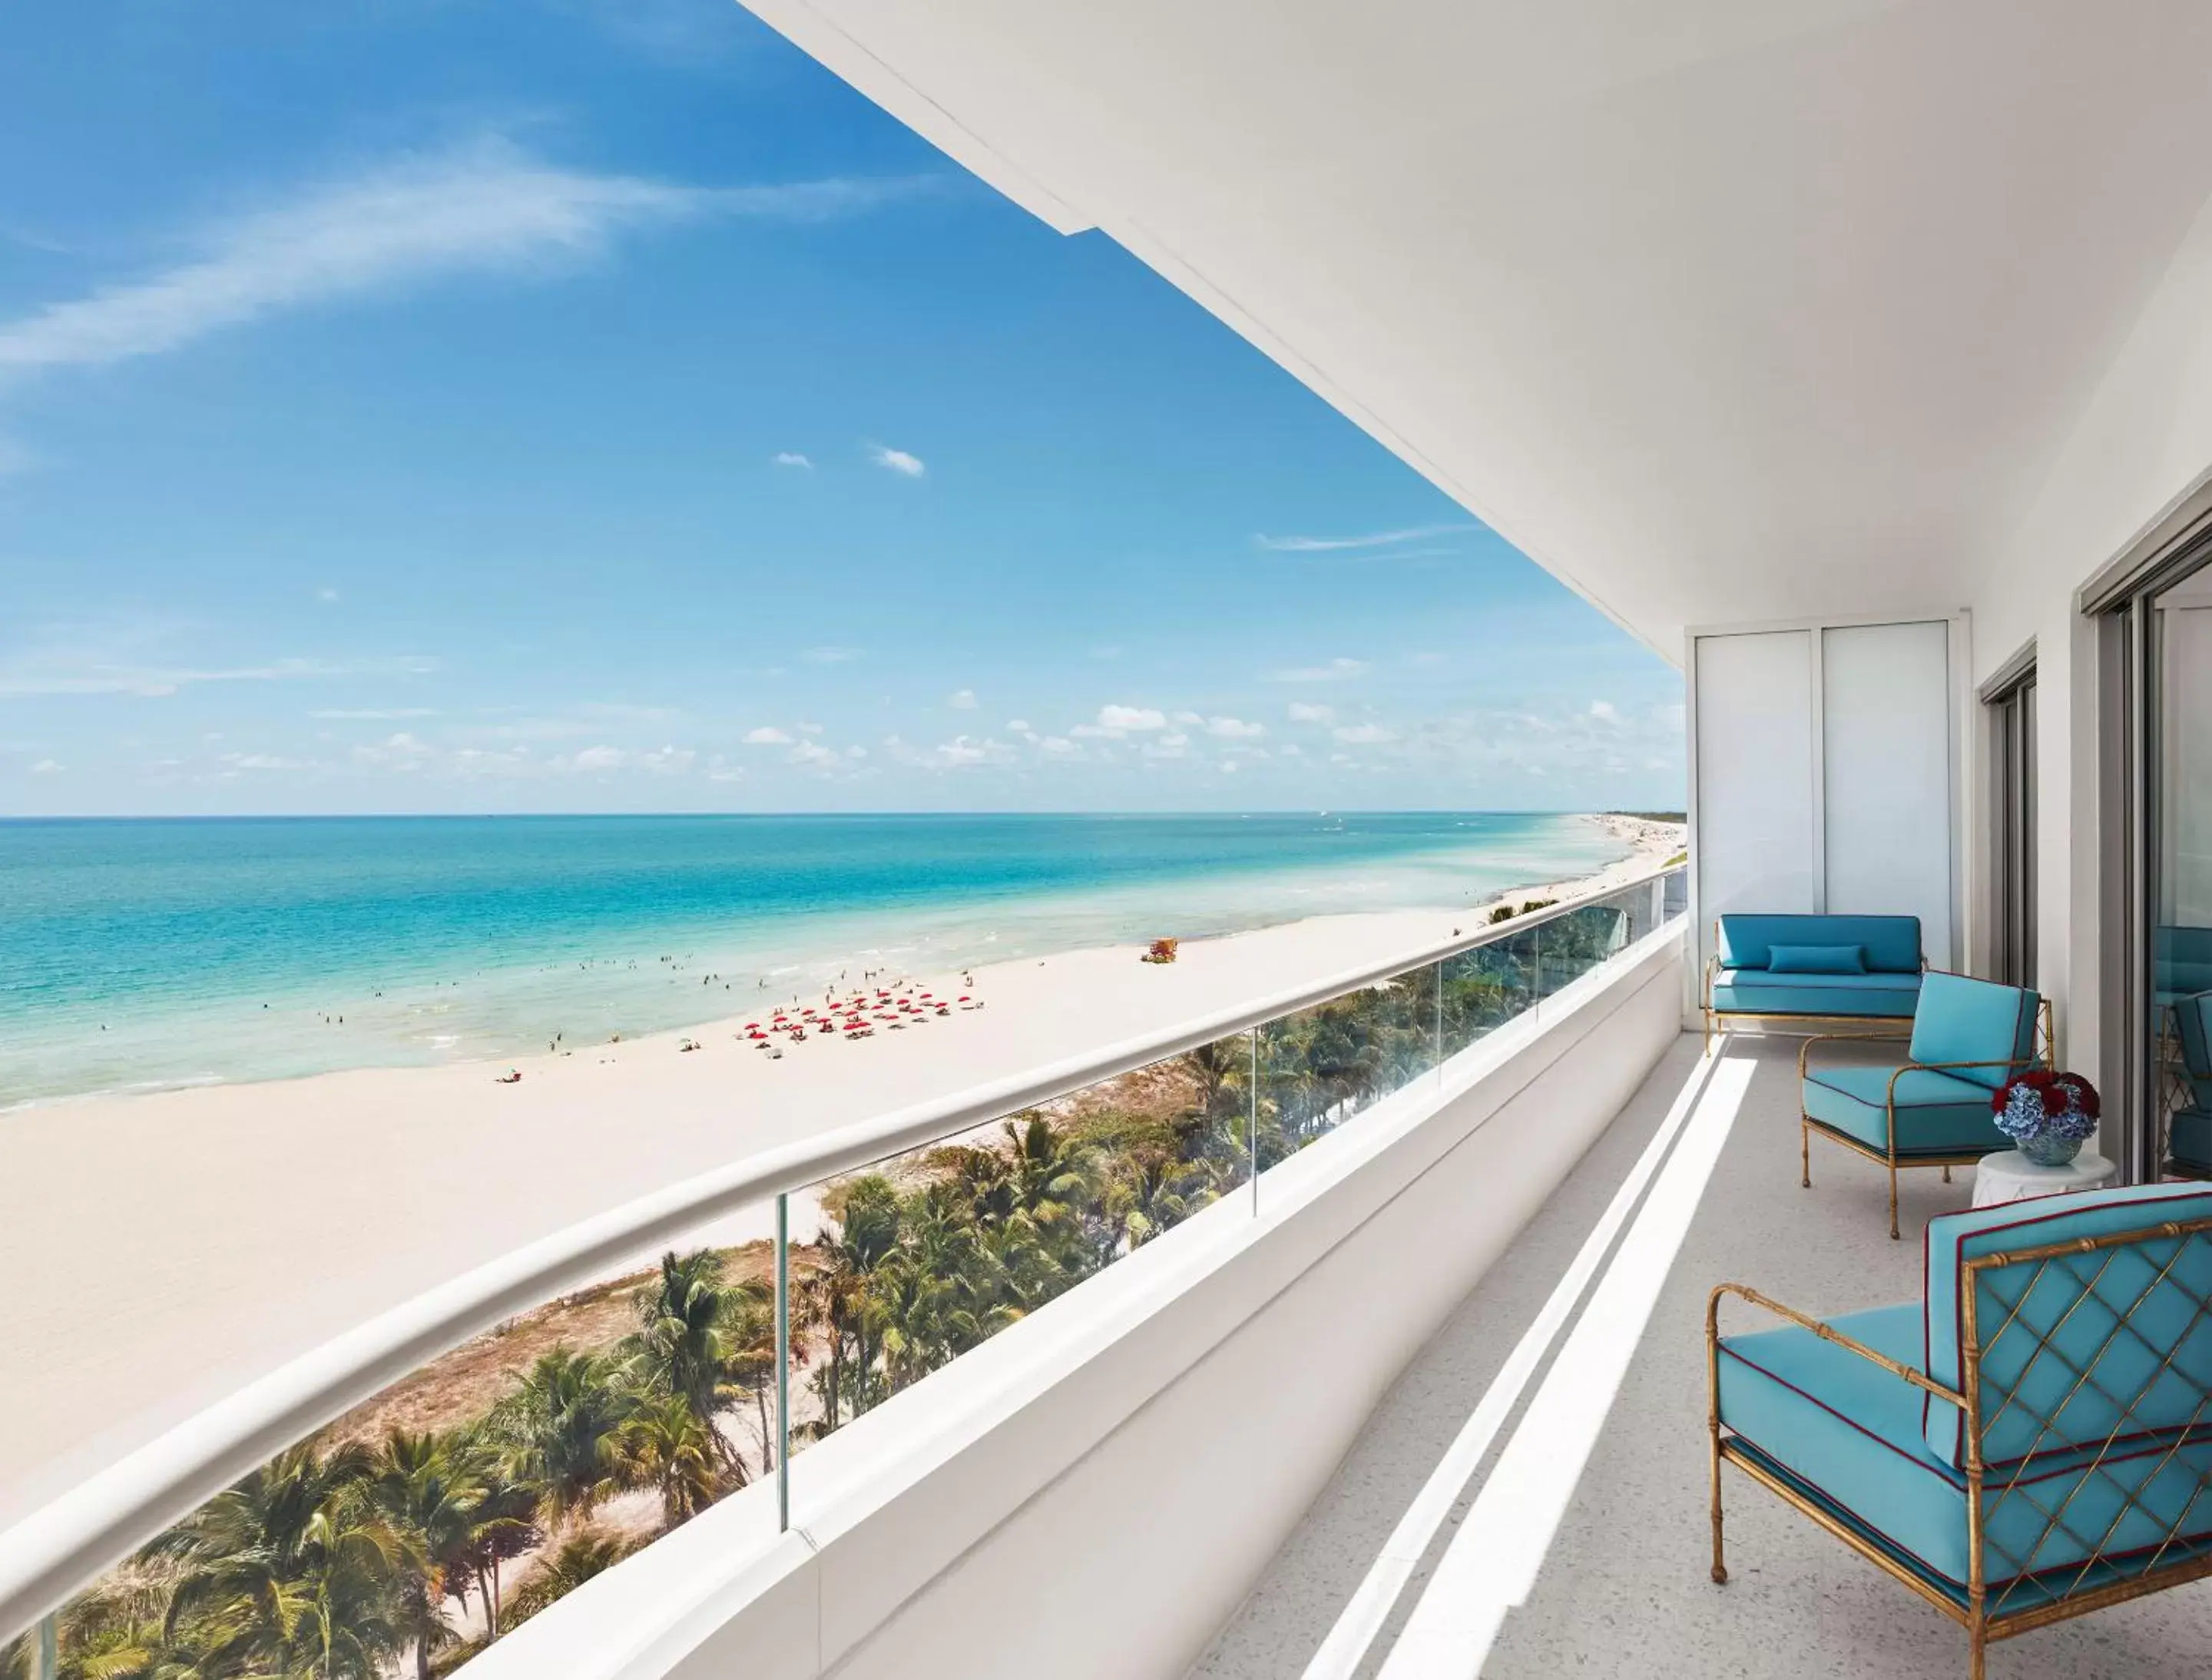 Sea view in Faena Hotel Miami Beach